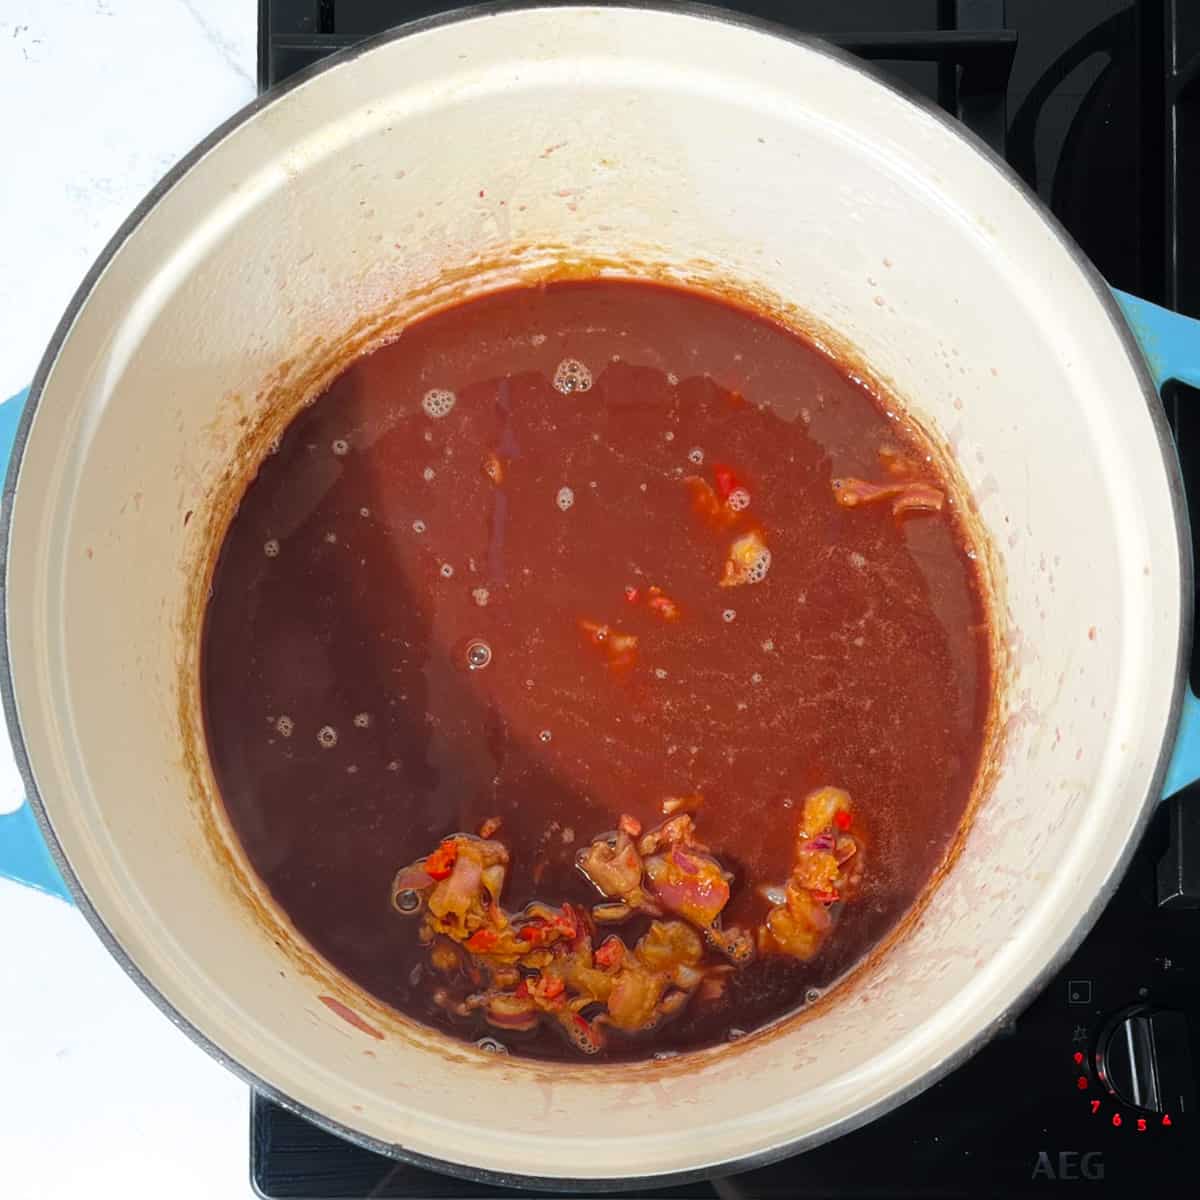 Adding the Trinchado sauce to the saucepan.